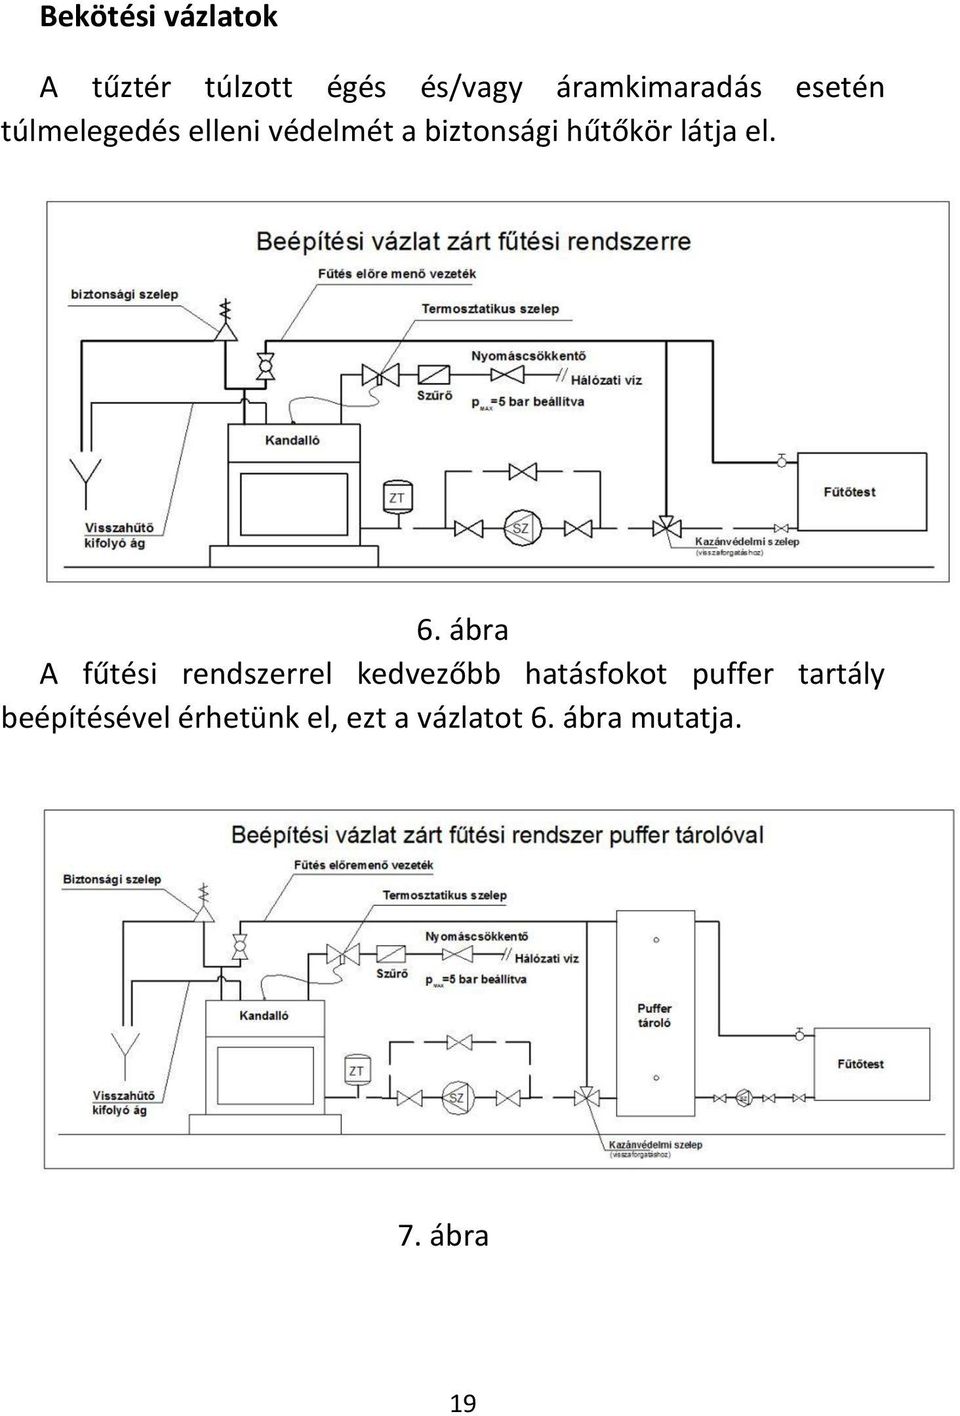 6. ábra A fűtési rendszerrel kedvezőbb hatásfokot puffer tartály